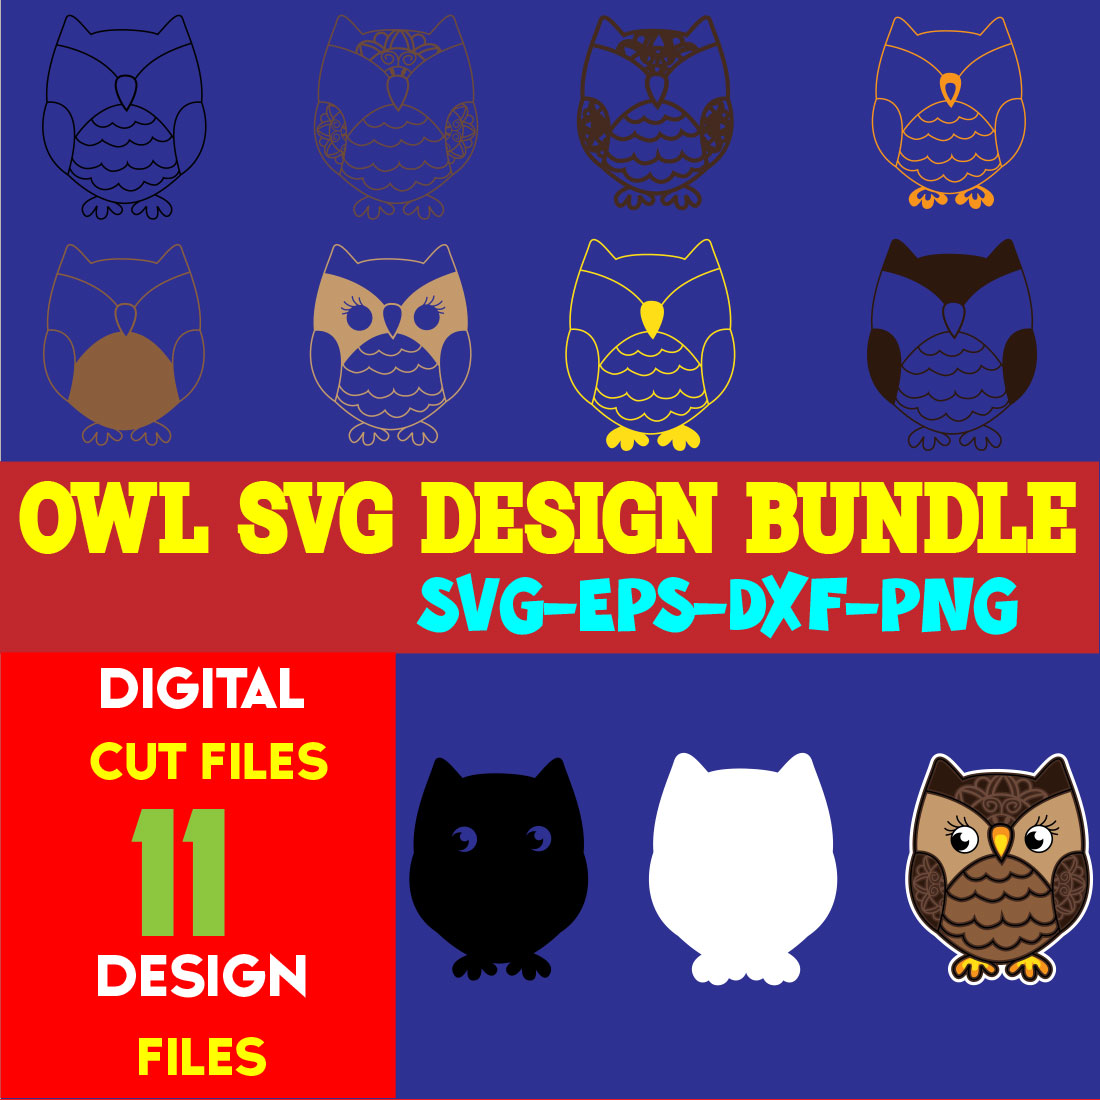 Owl SVG Design Bundle cover image.